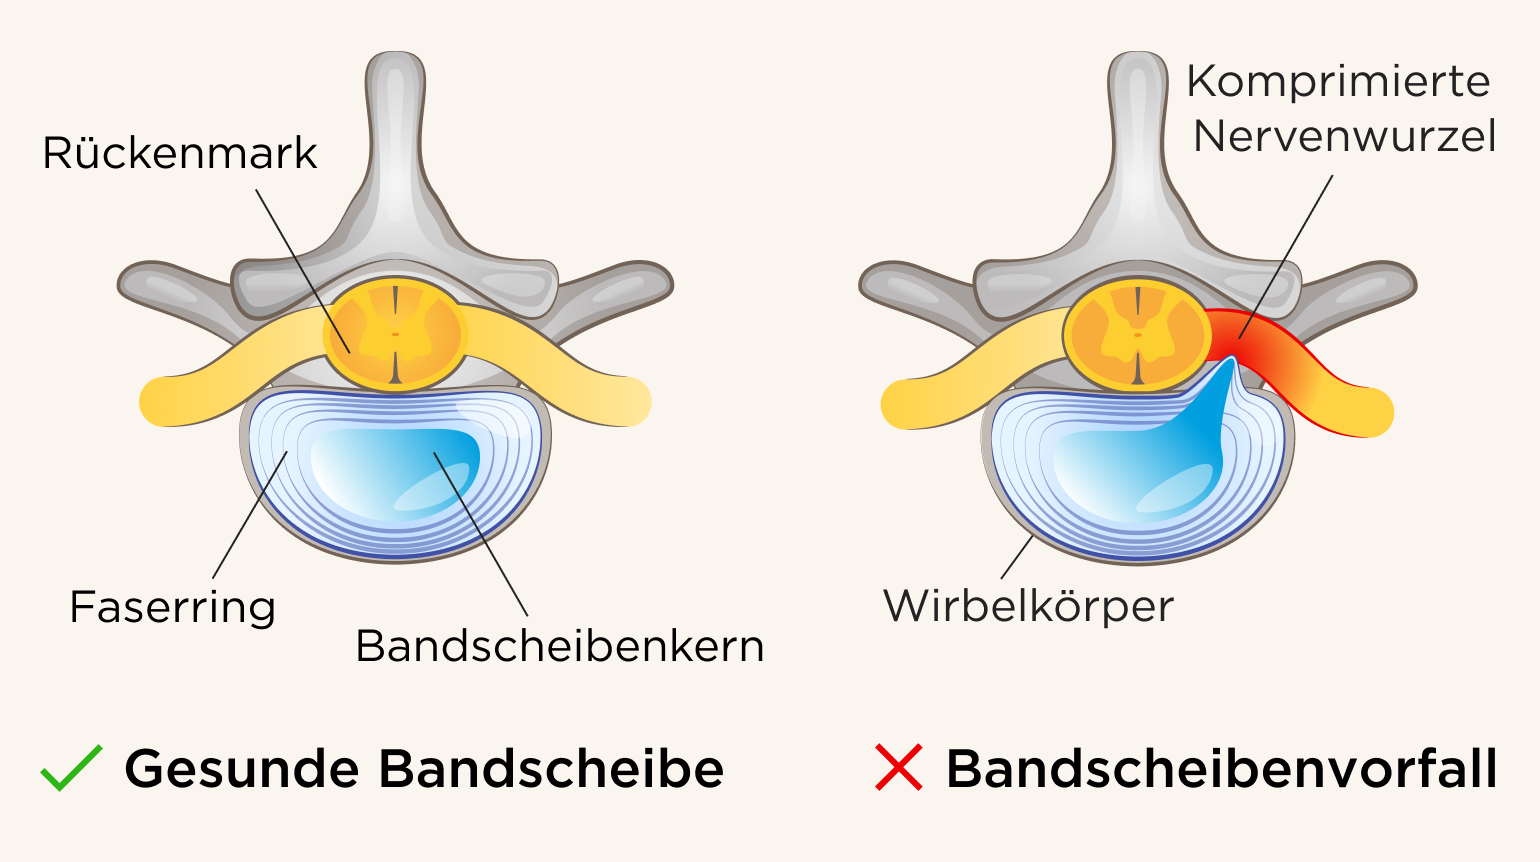 In der 1. Illustration ist eine gesunde, normale Bandscheibe zu sehen, inklusive Spinalkanal, Bandscheibenring und -kern. In der 2. Illustration ist ein Prolaps  zu erkennen, bei dem eine Nervenwurzel komprimiert wird.